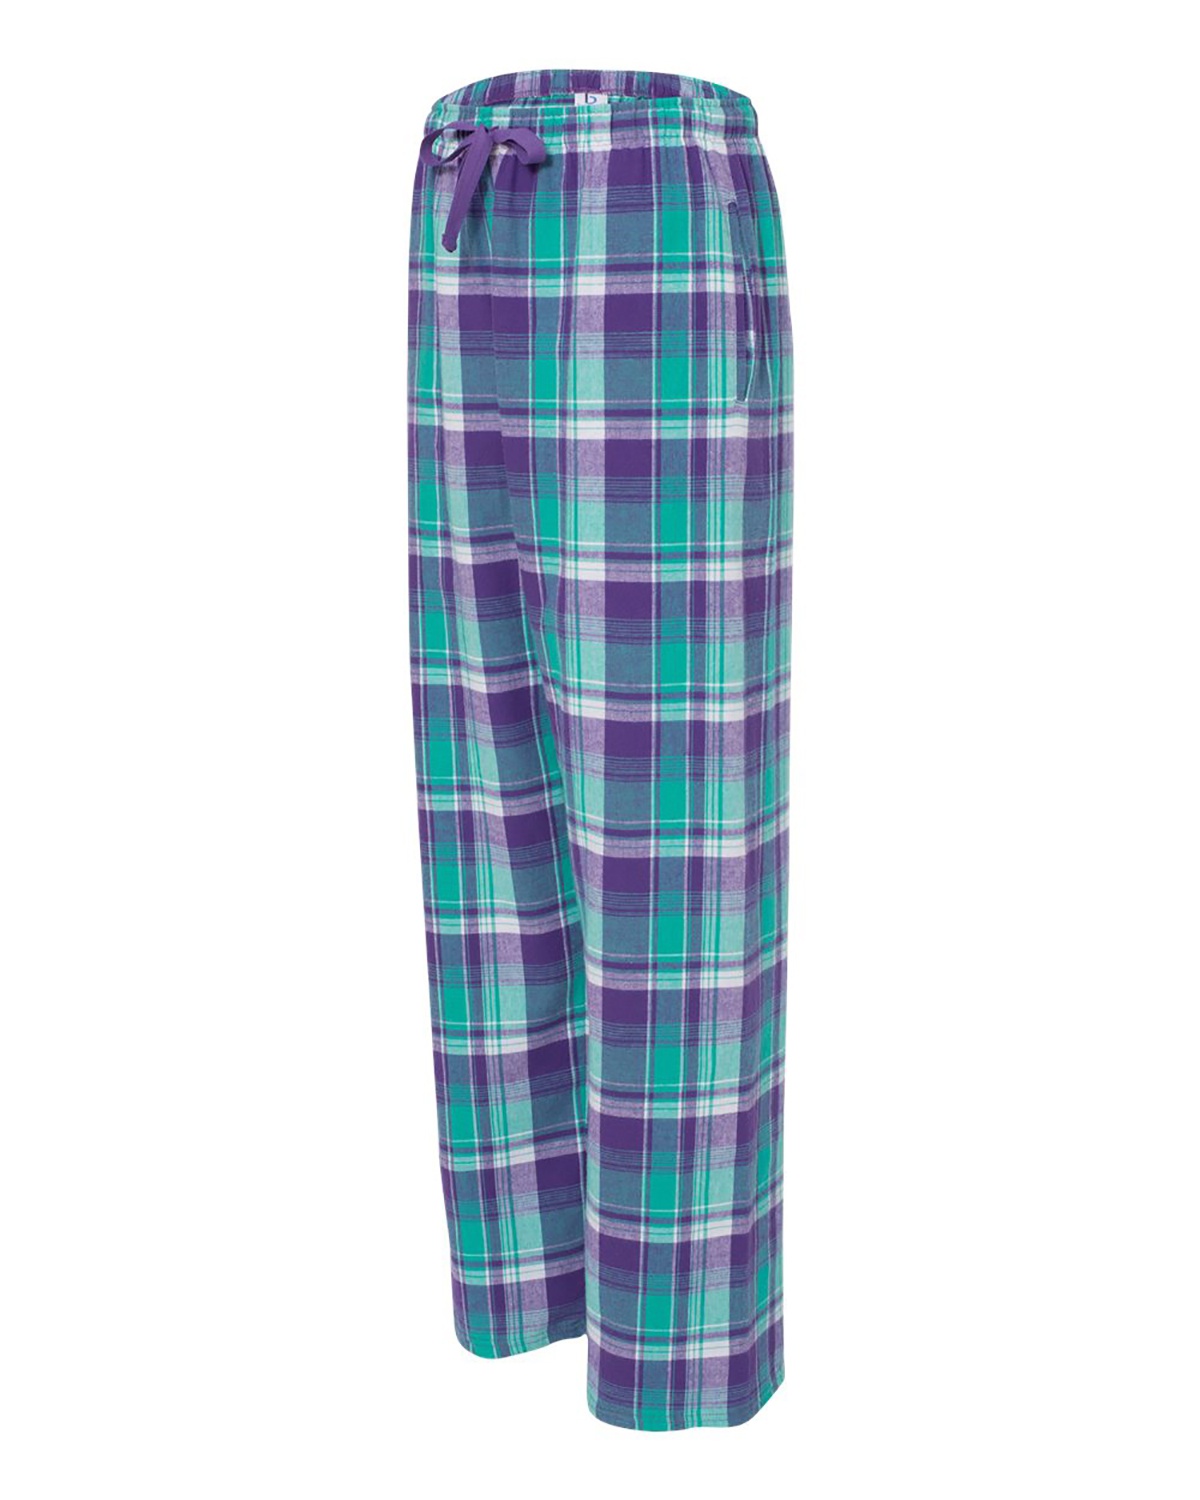 Boxercraft Flannel Pants Size Chart